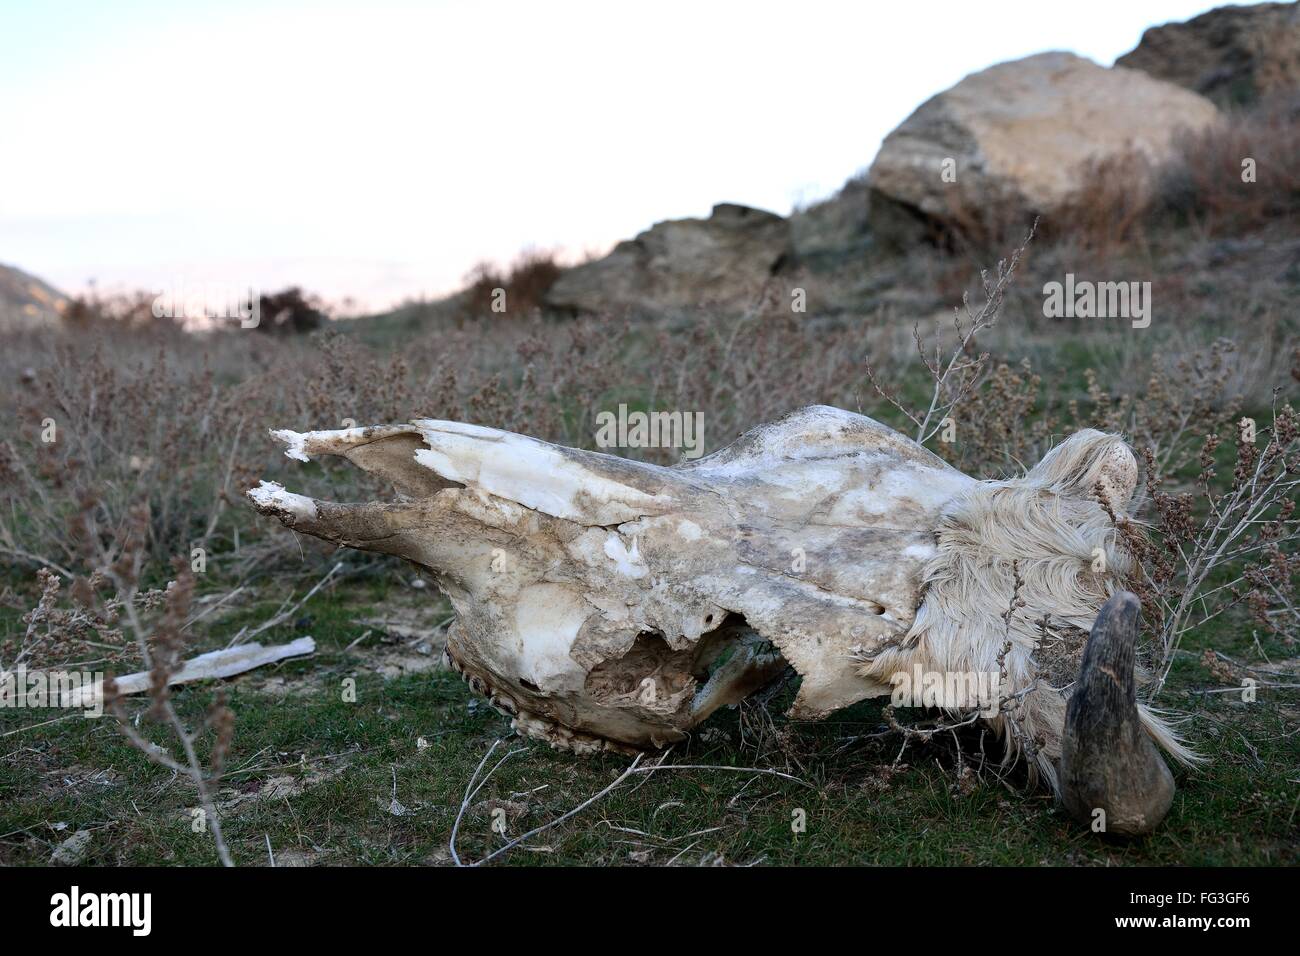 Kuh Schädel am Hang in Aserbaidschan. Ein gehörnter Schädel liegt auf dem kurzen Rasen vor Felsen Stockfoto